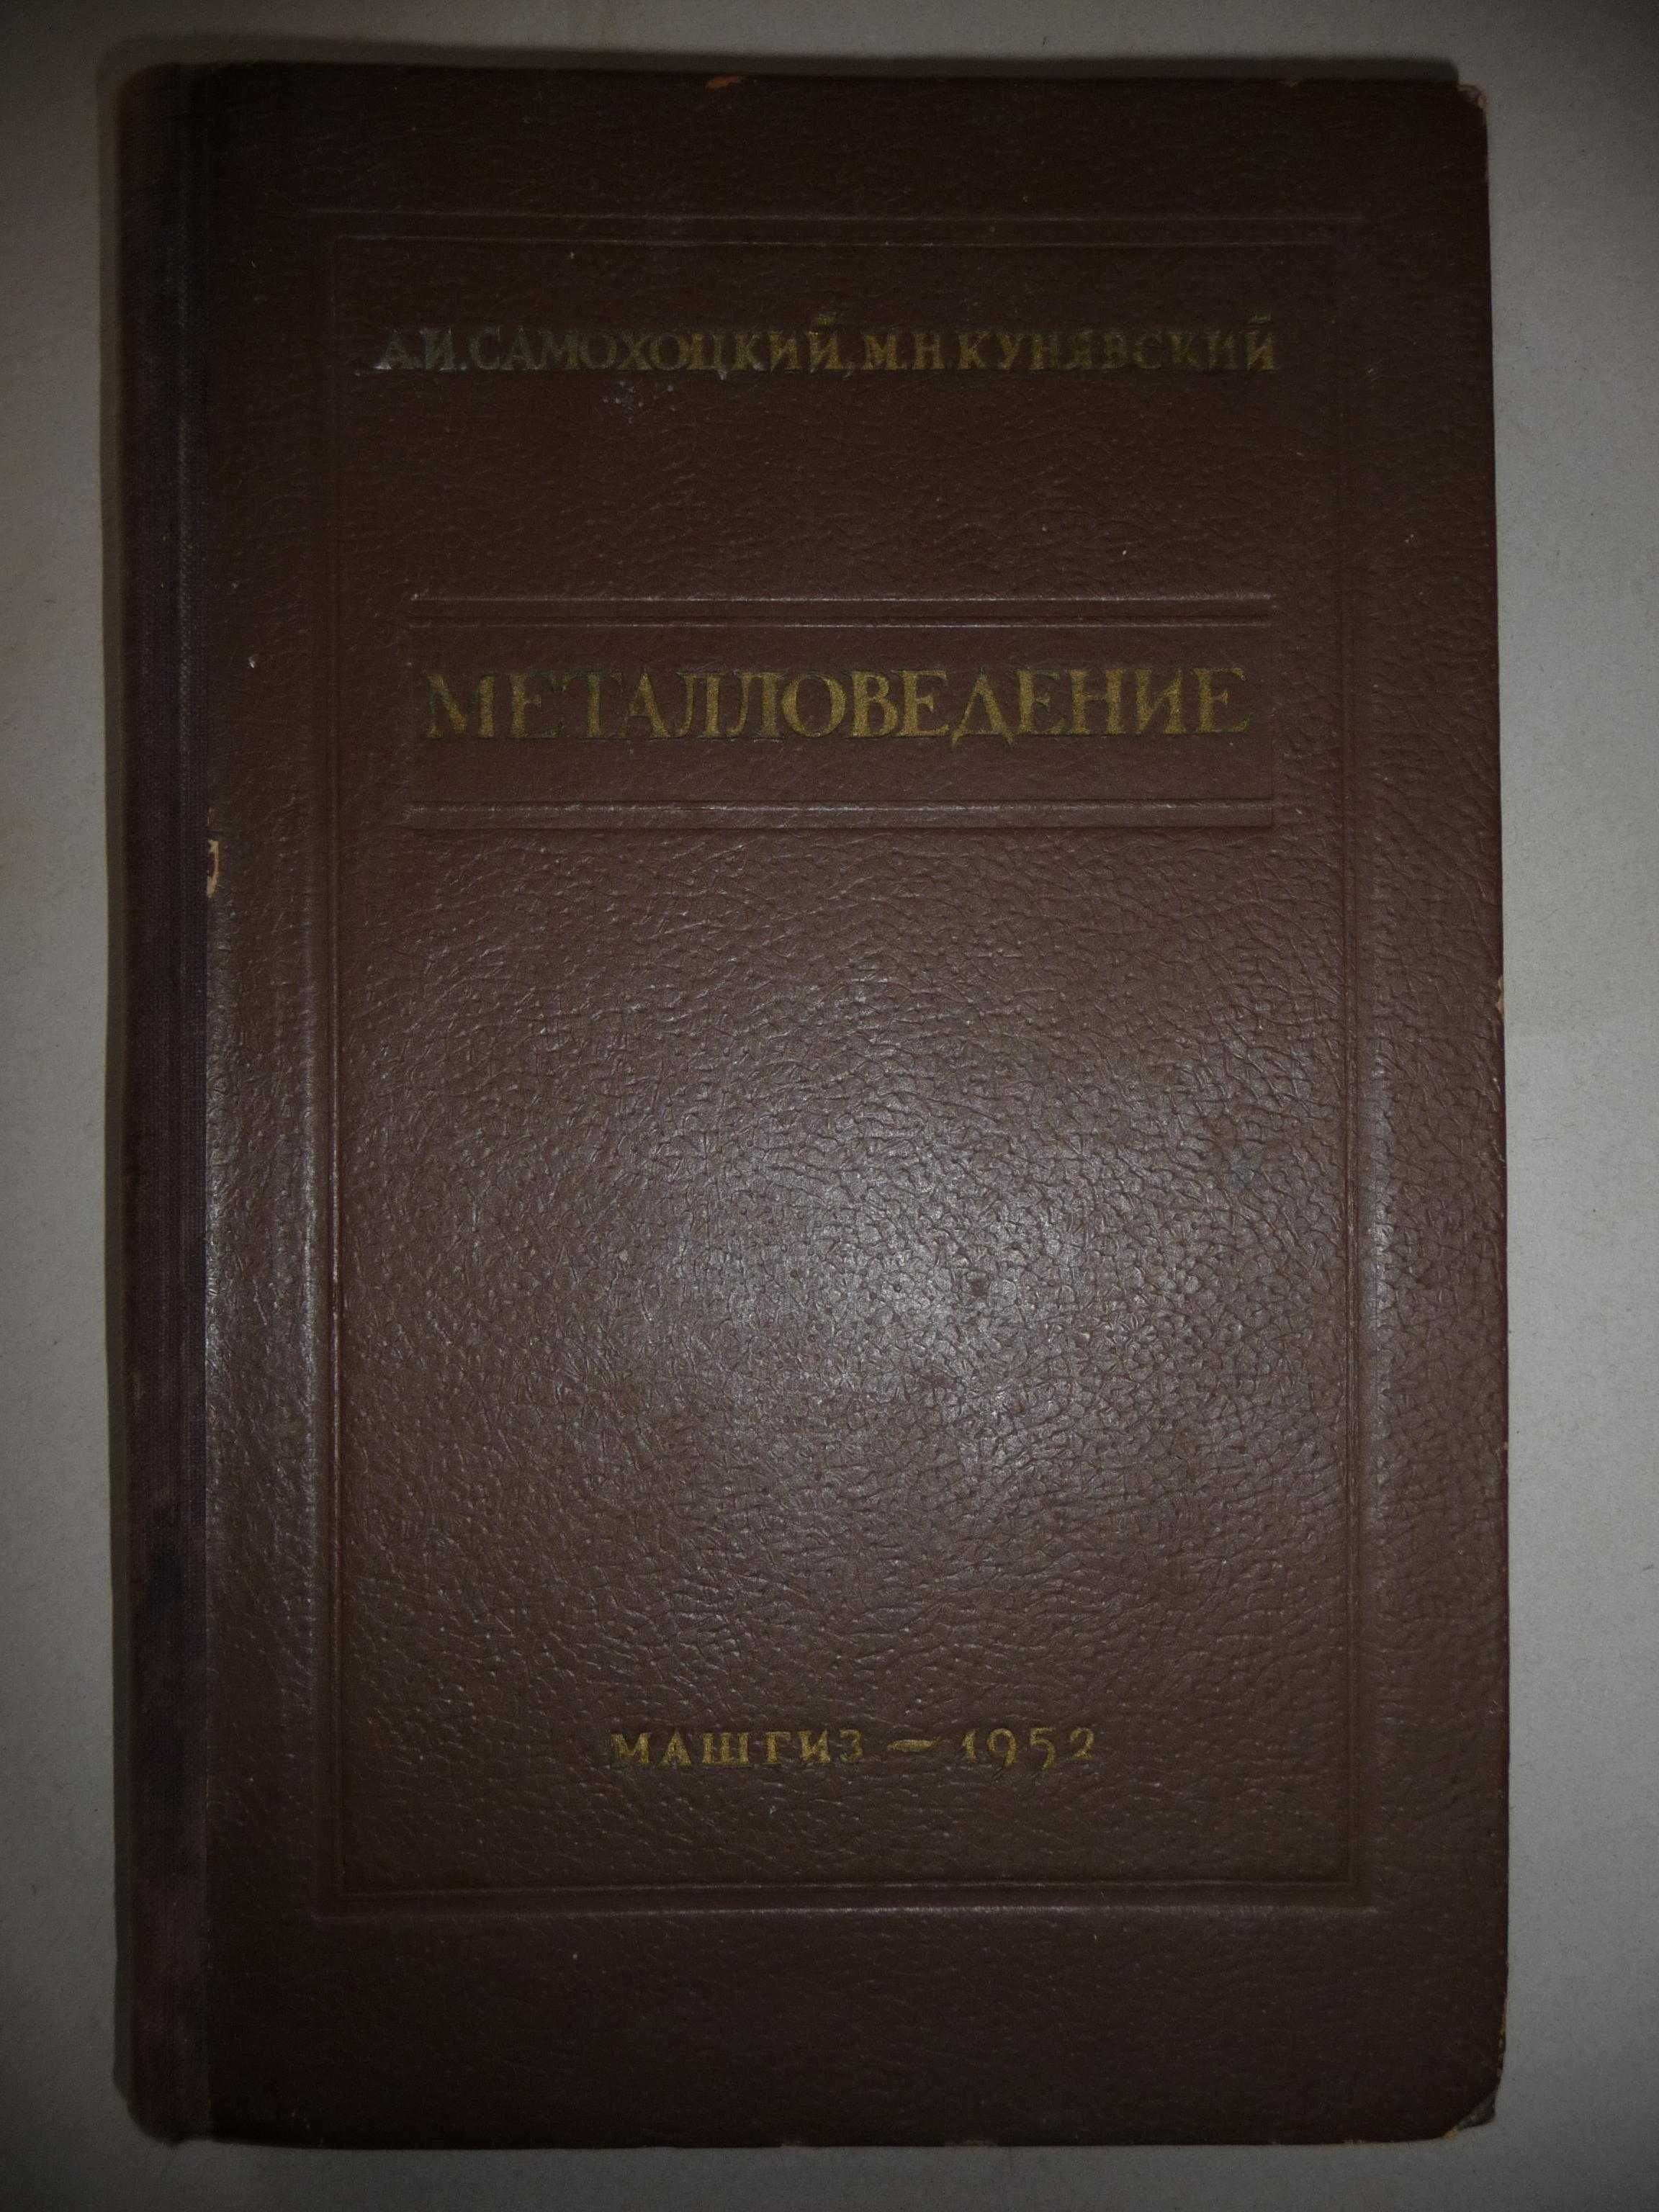 А.И. Самохоцкий "Металловедение" 1952 г. книга букинистическая